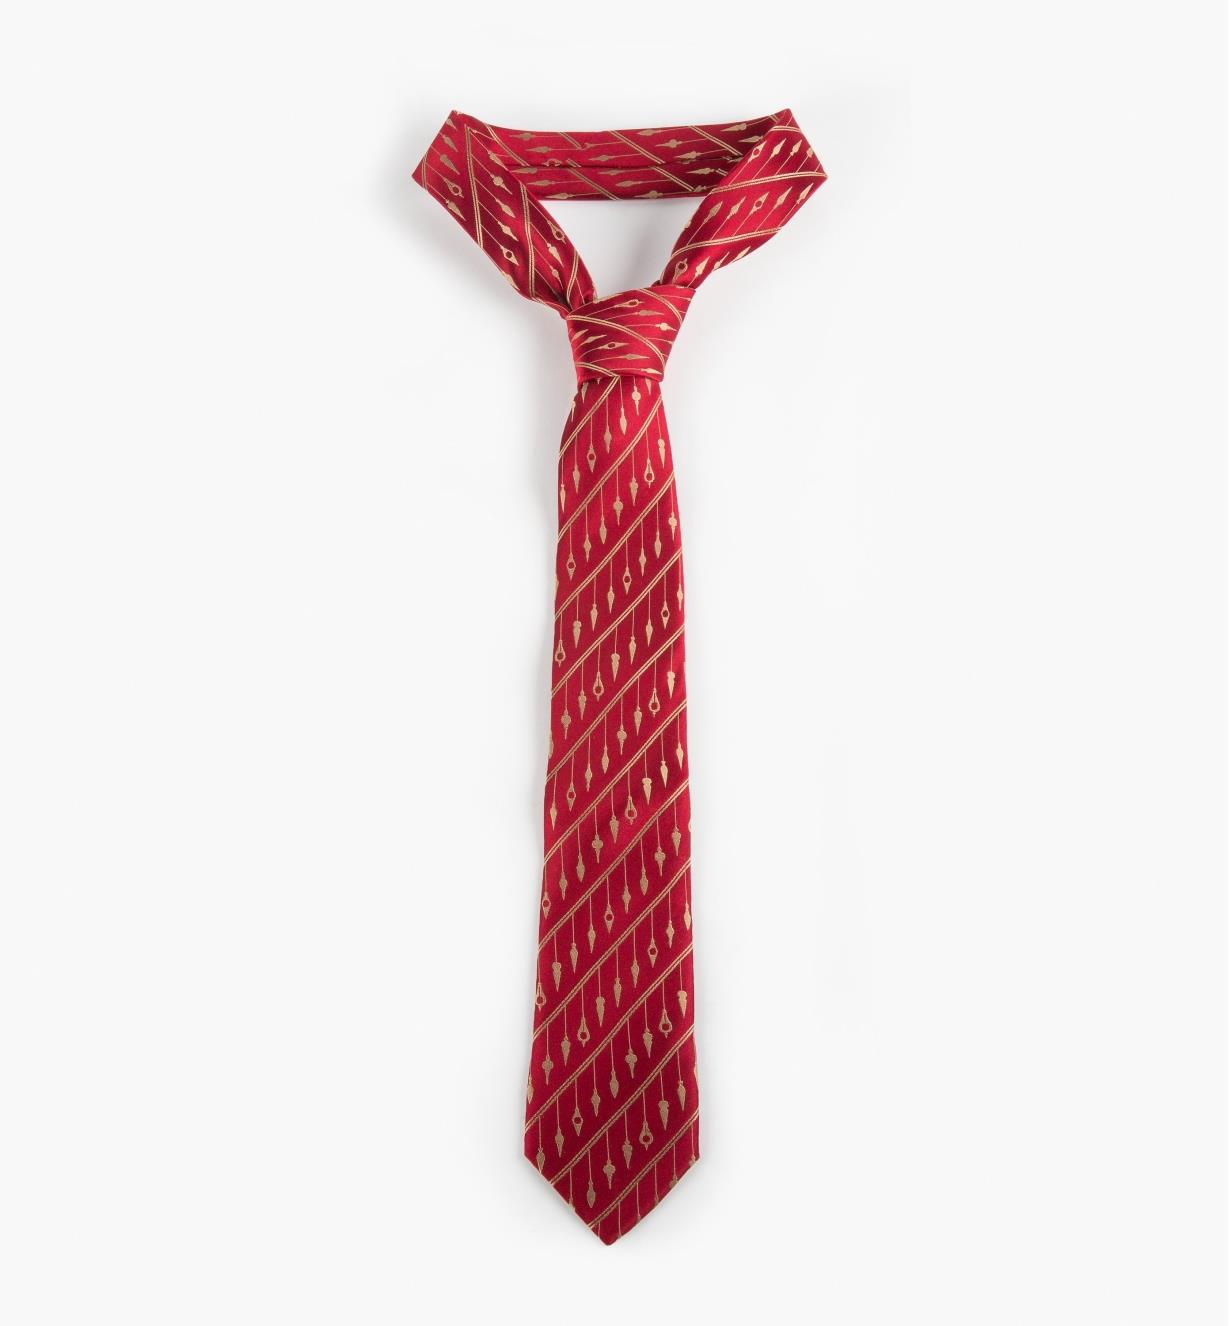 67K3090 - Cravate d'ébéniste